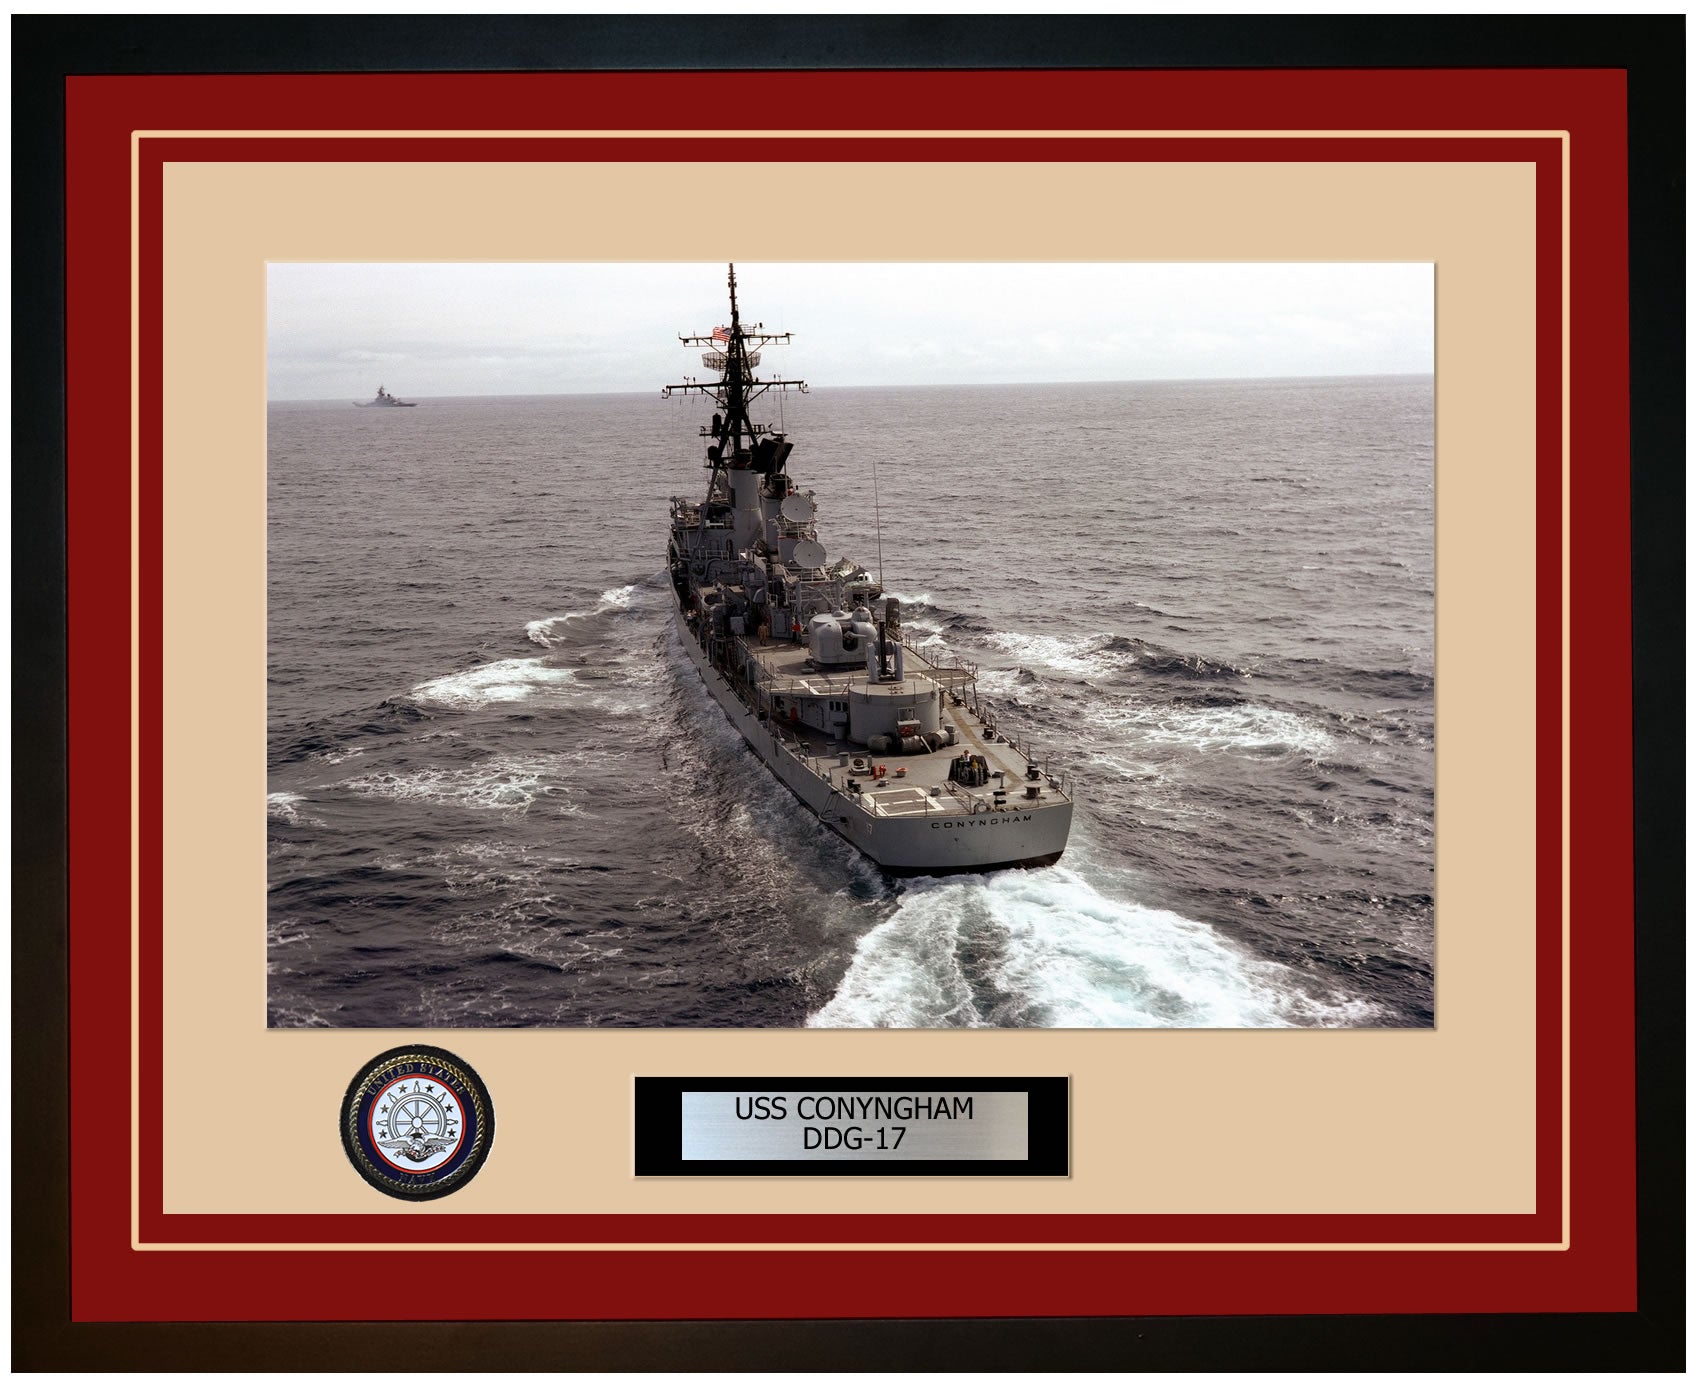 USS CONYNGHAM DDG-17 Framed Navy Ship Photo Burgundy